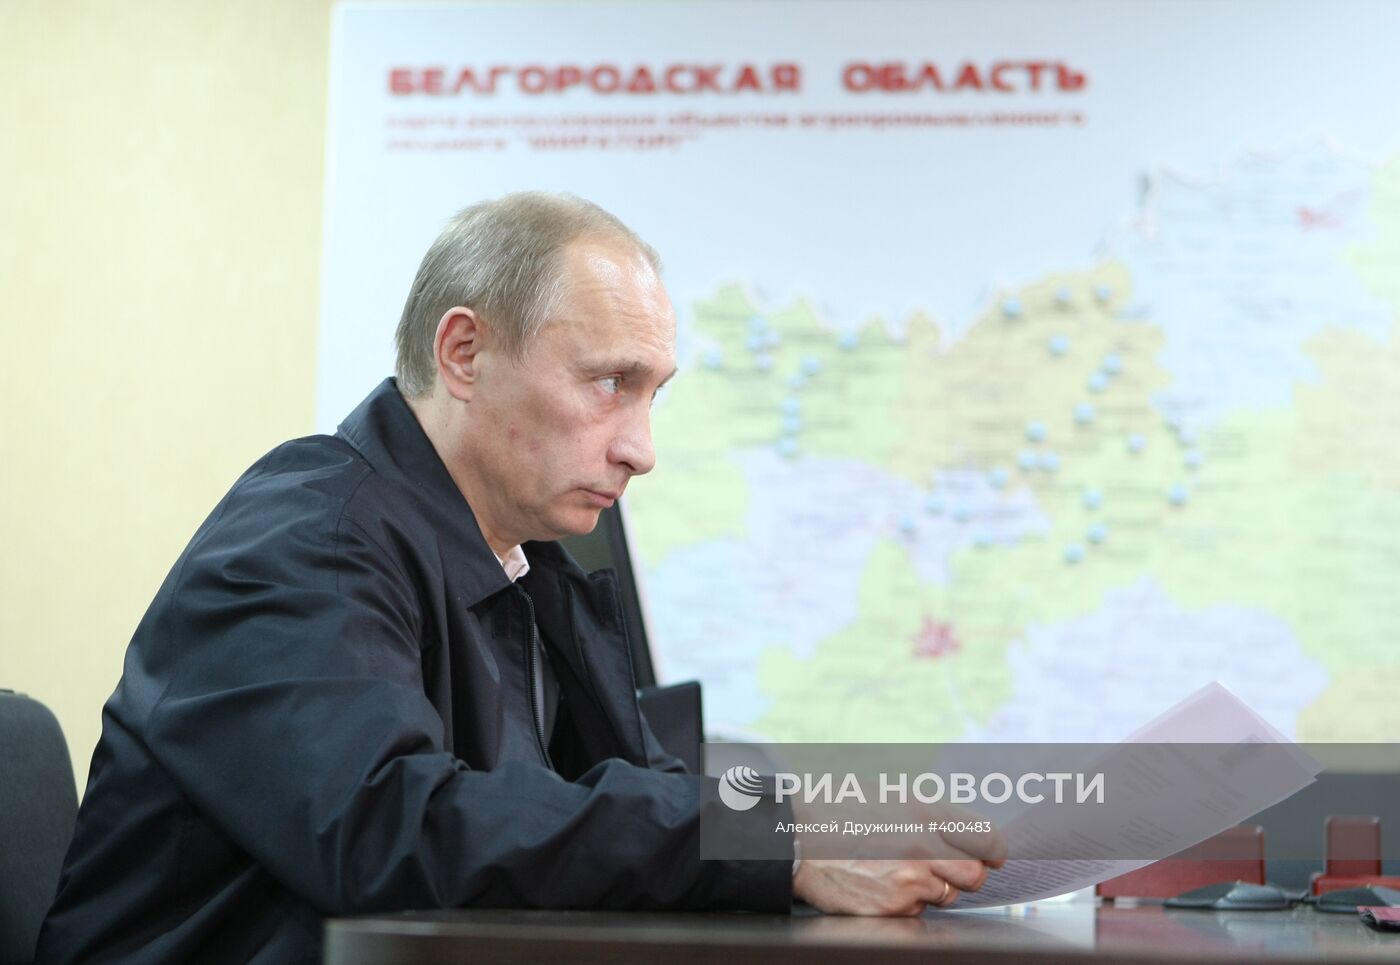 Рабочая поездка премьер-министра В.Путина в Белгородскую область